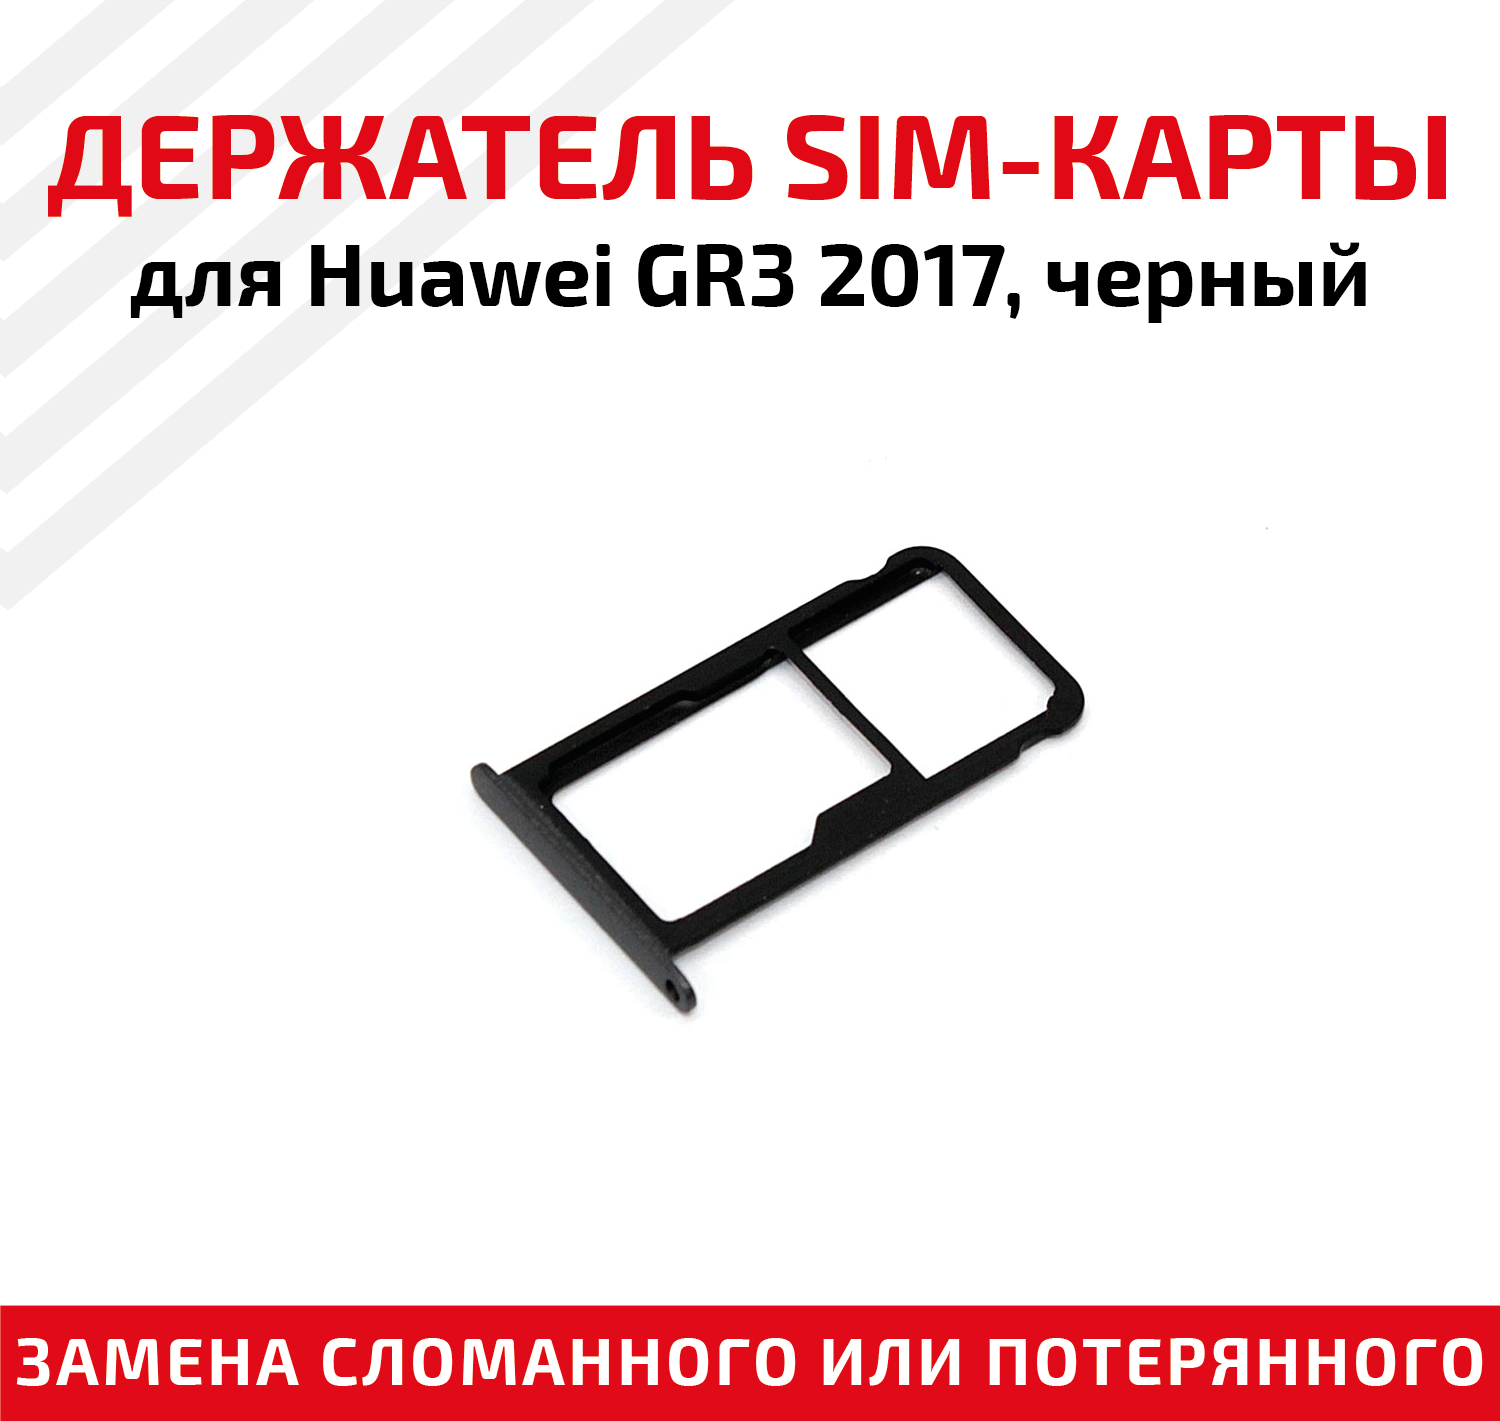 Лоток (держатель, контейнер, слот) SIM-карты для мобильного телефона (смартфона) Huawei GR3 2017, черный